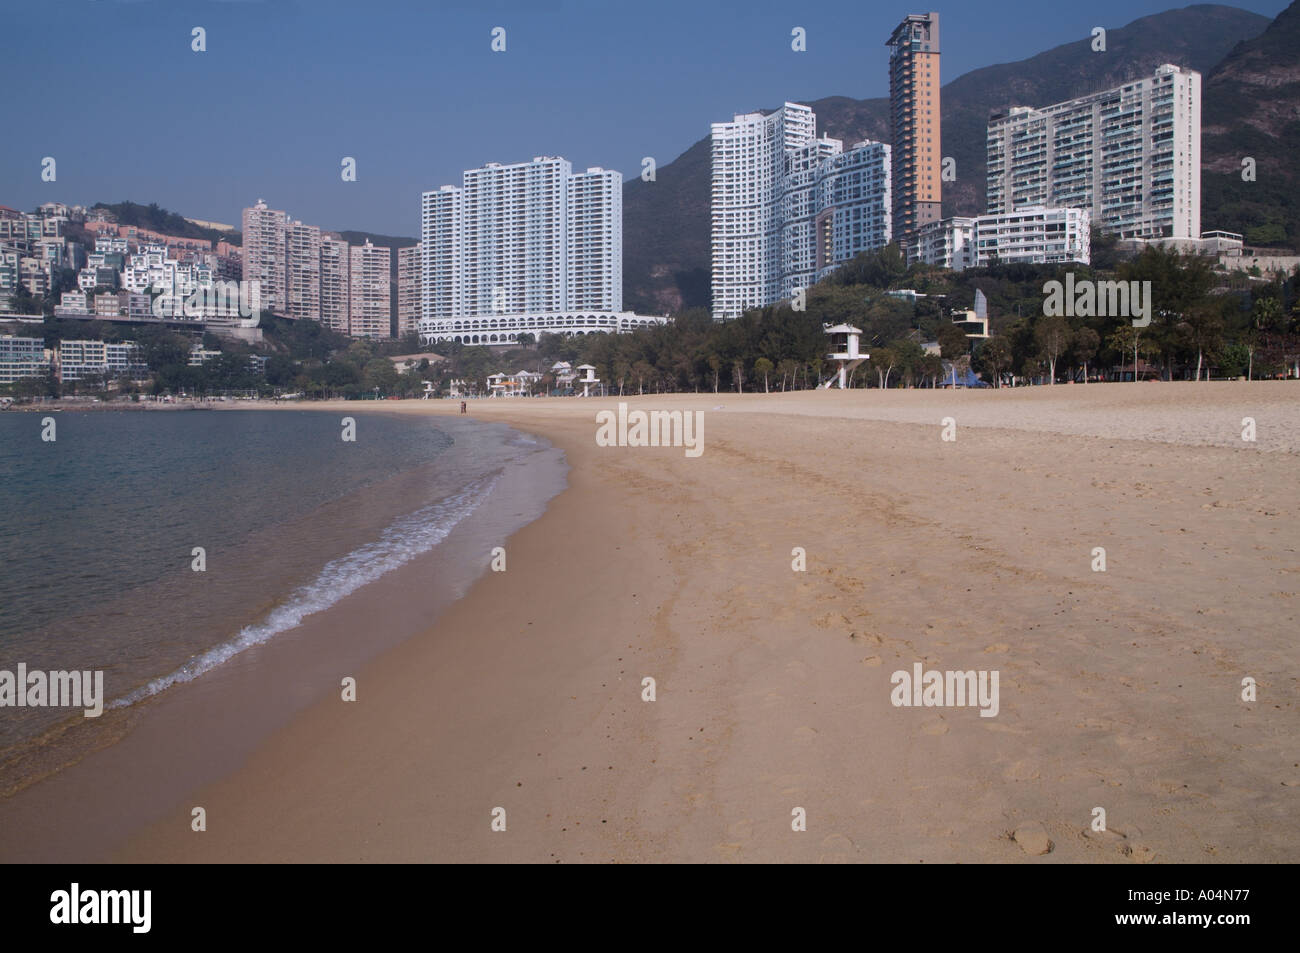 dh Repulse Bay Beach REPULSE BAY HONG KONG le grand immeuble d'appartements ovelooking sable île plage blocs de sable Banque D'Images